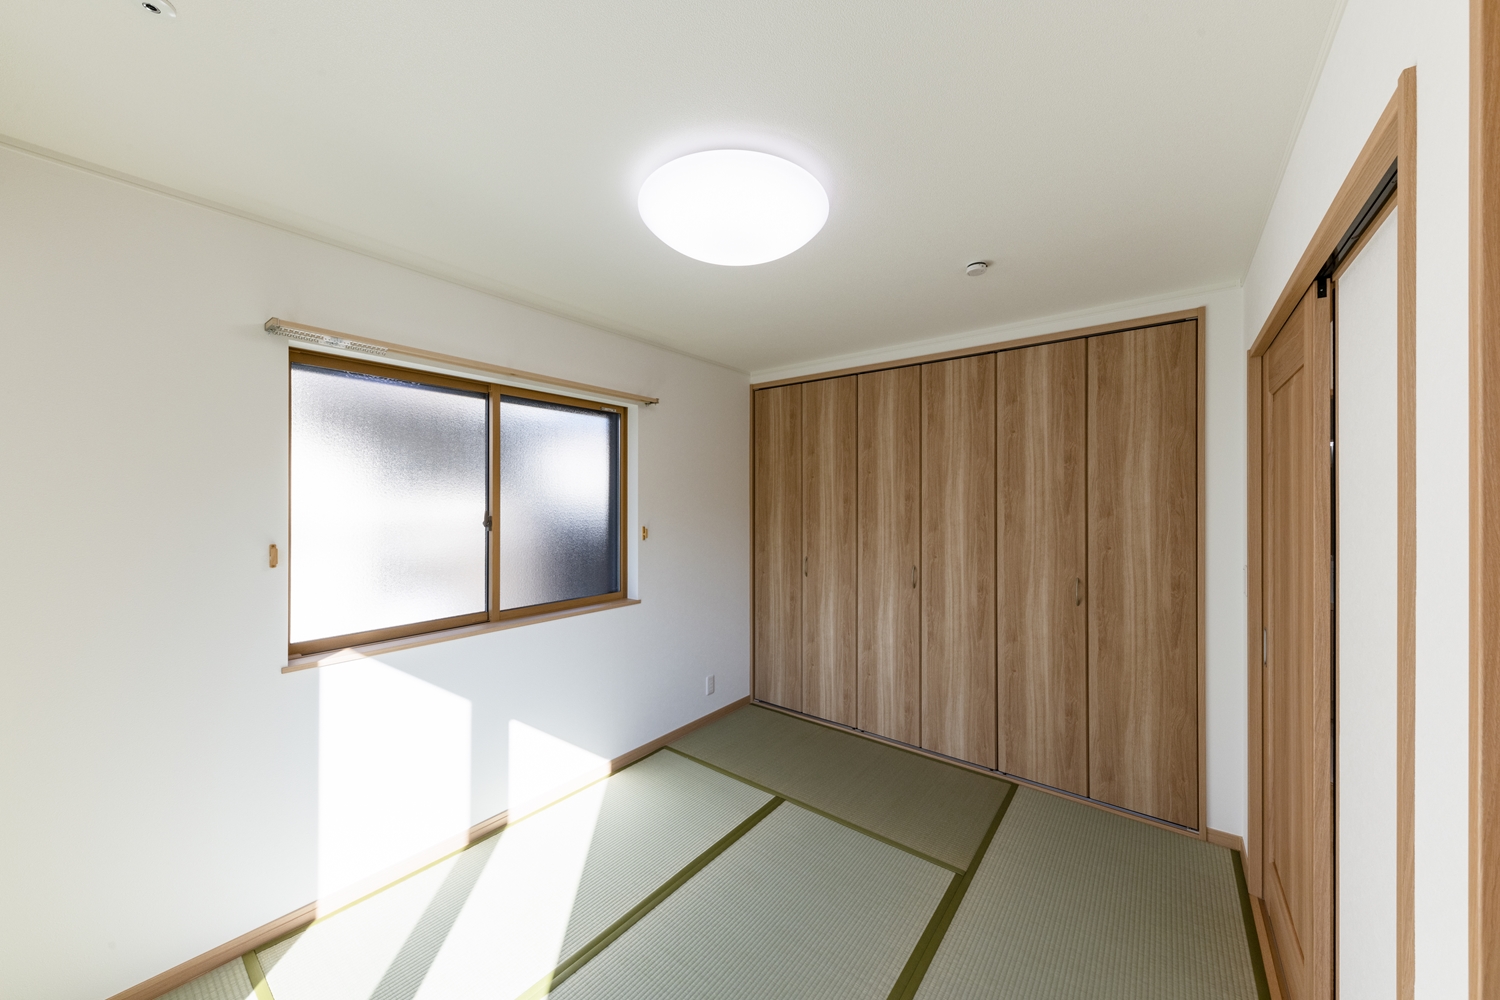 畳のさわやかなグリーンが空間を彩る1階畳敷き洋室。大きなクロゼットを設え収納たっぷり、住空間を広々とご使用できます。